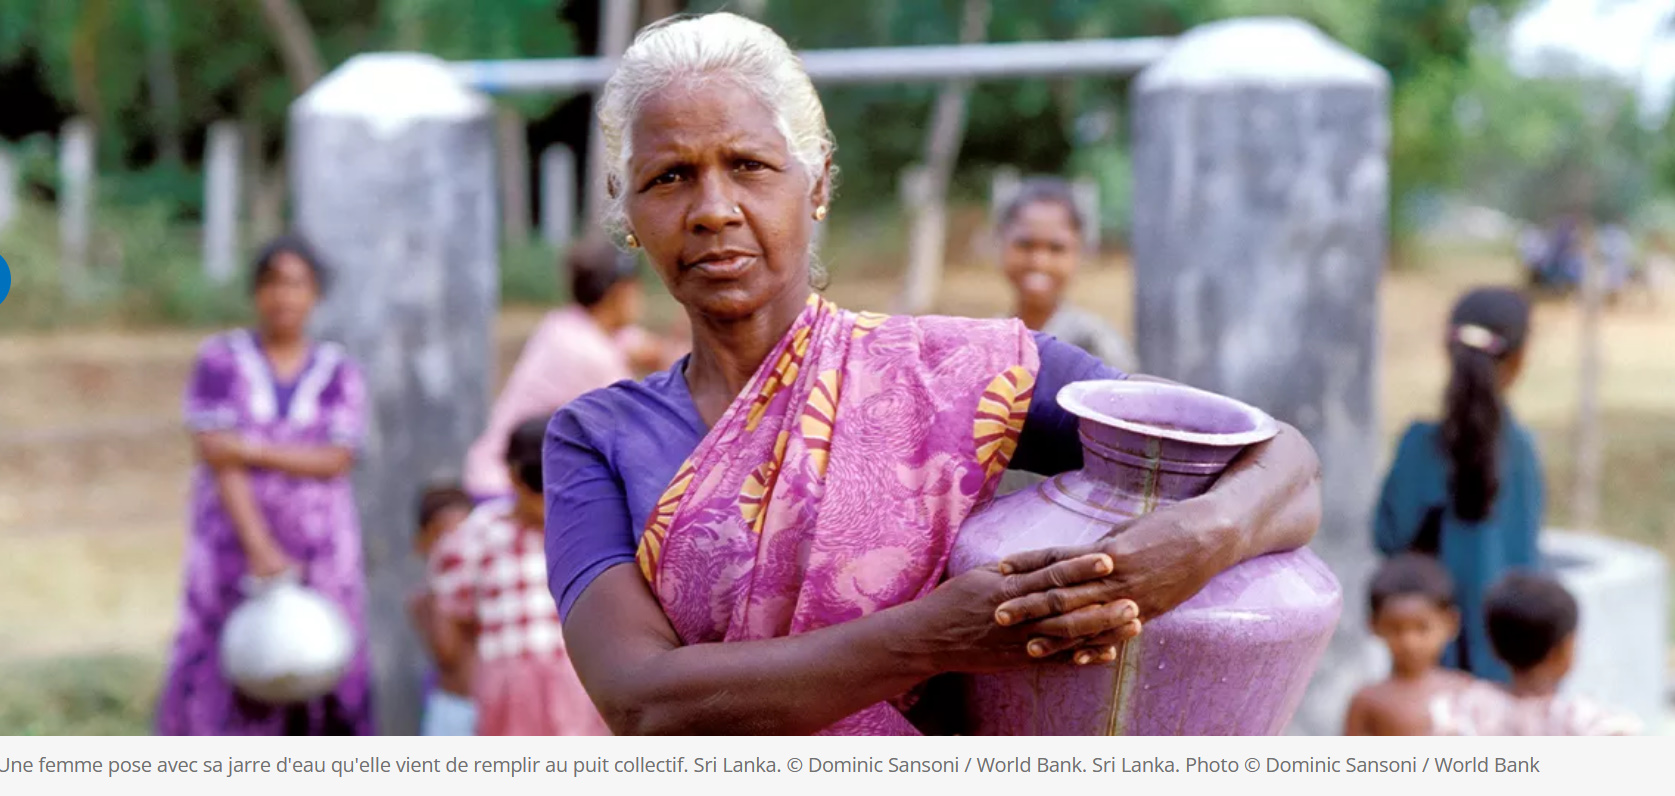 Une femme pose avec sa jarre d'eau qu'elle vient de remplir au puit collectif. Sri Lanka. © Dominic Sansoni / World Bank. Sri Lanka. Photo © Dominic Sansoni / World Bank